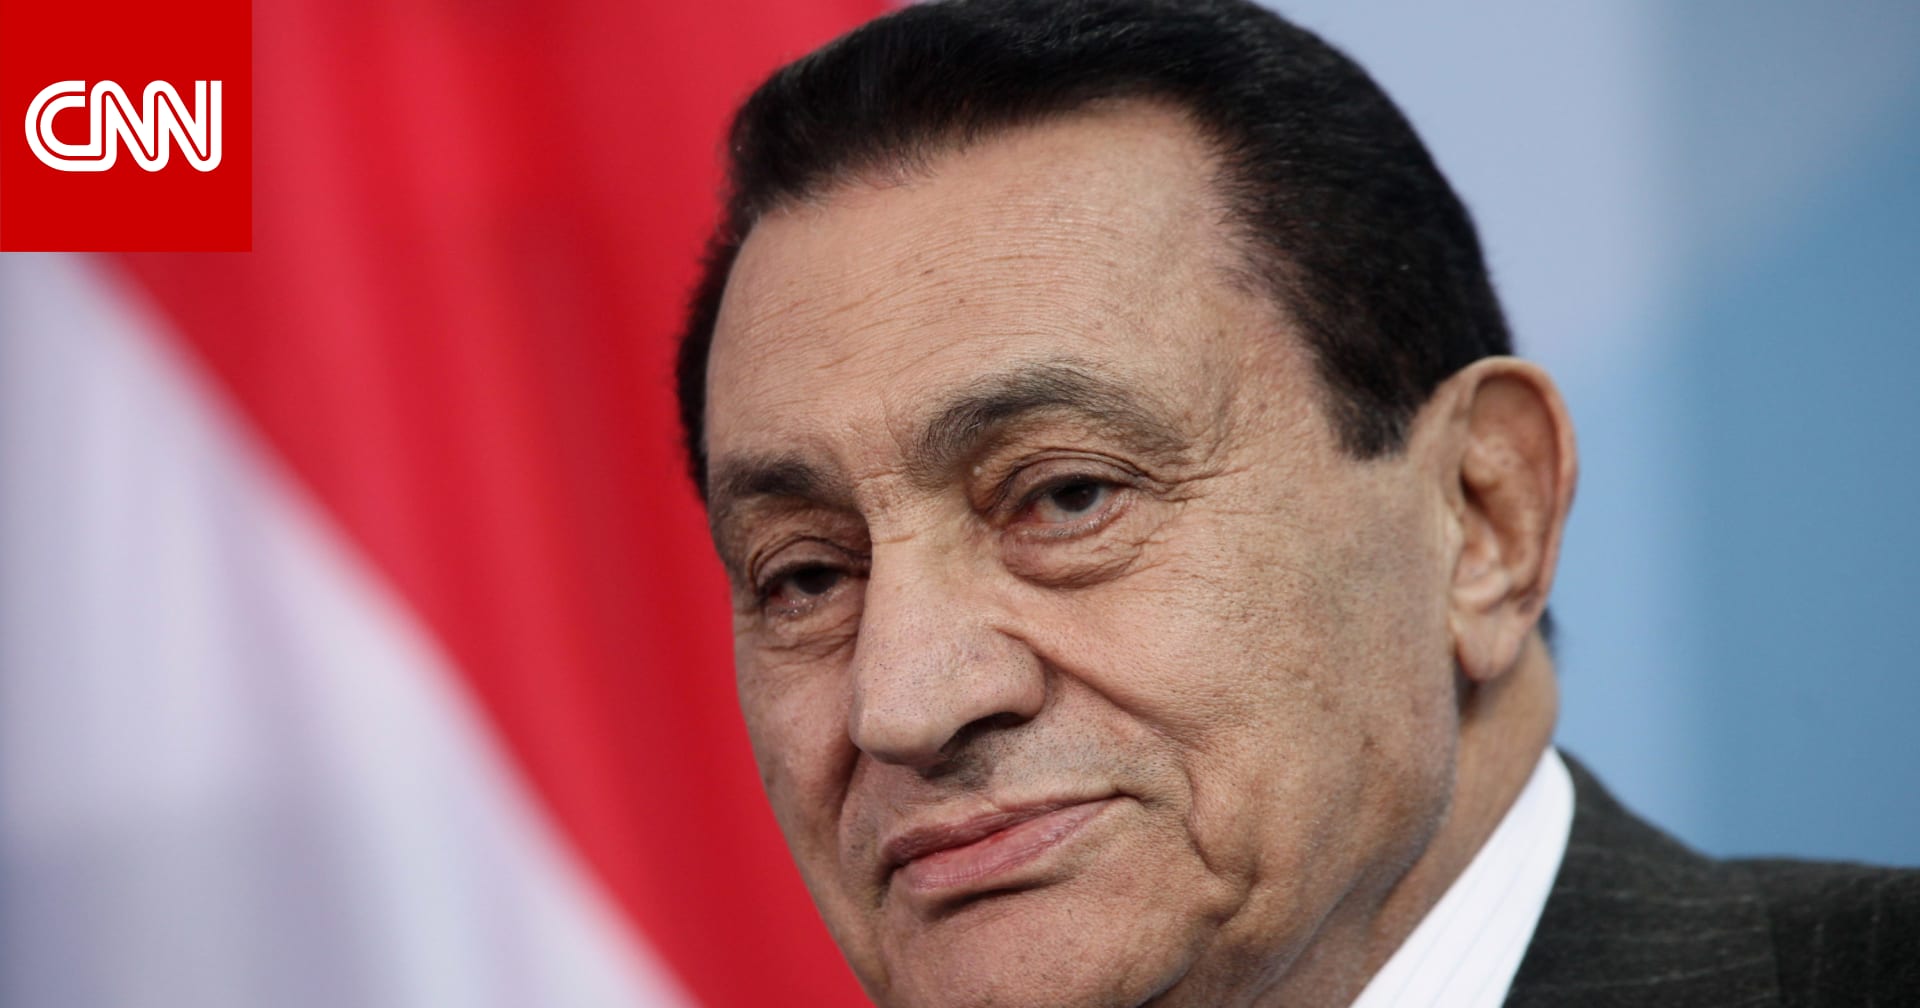 علاء مبارك يُجيب على سؤال حول السماح لـ"الناس العاديين" بزيارة ضريح والده